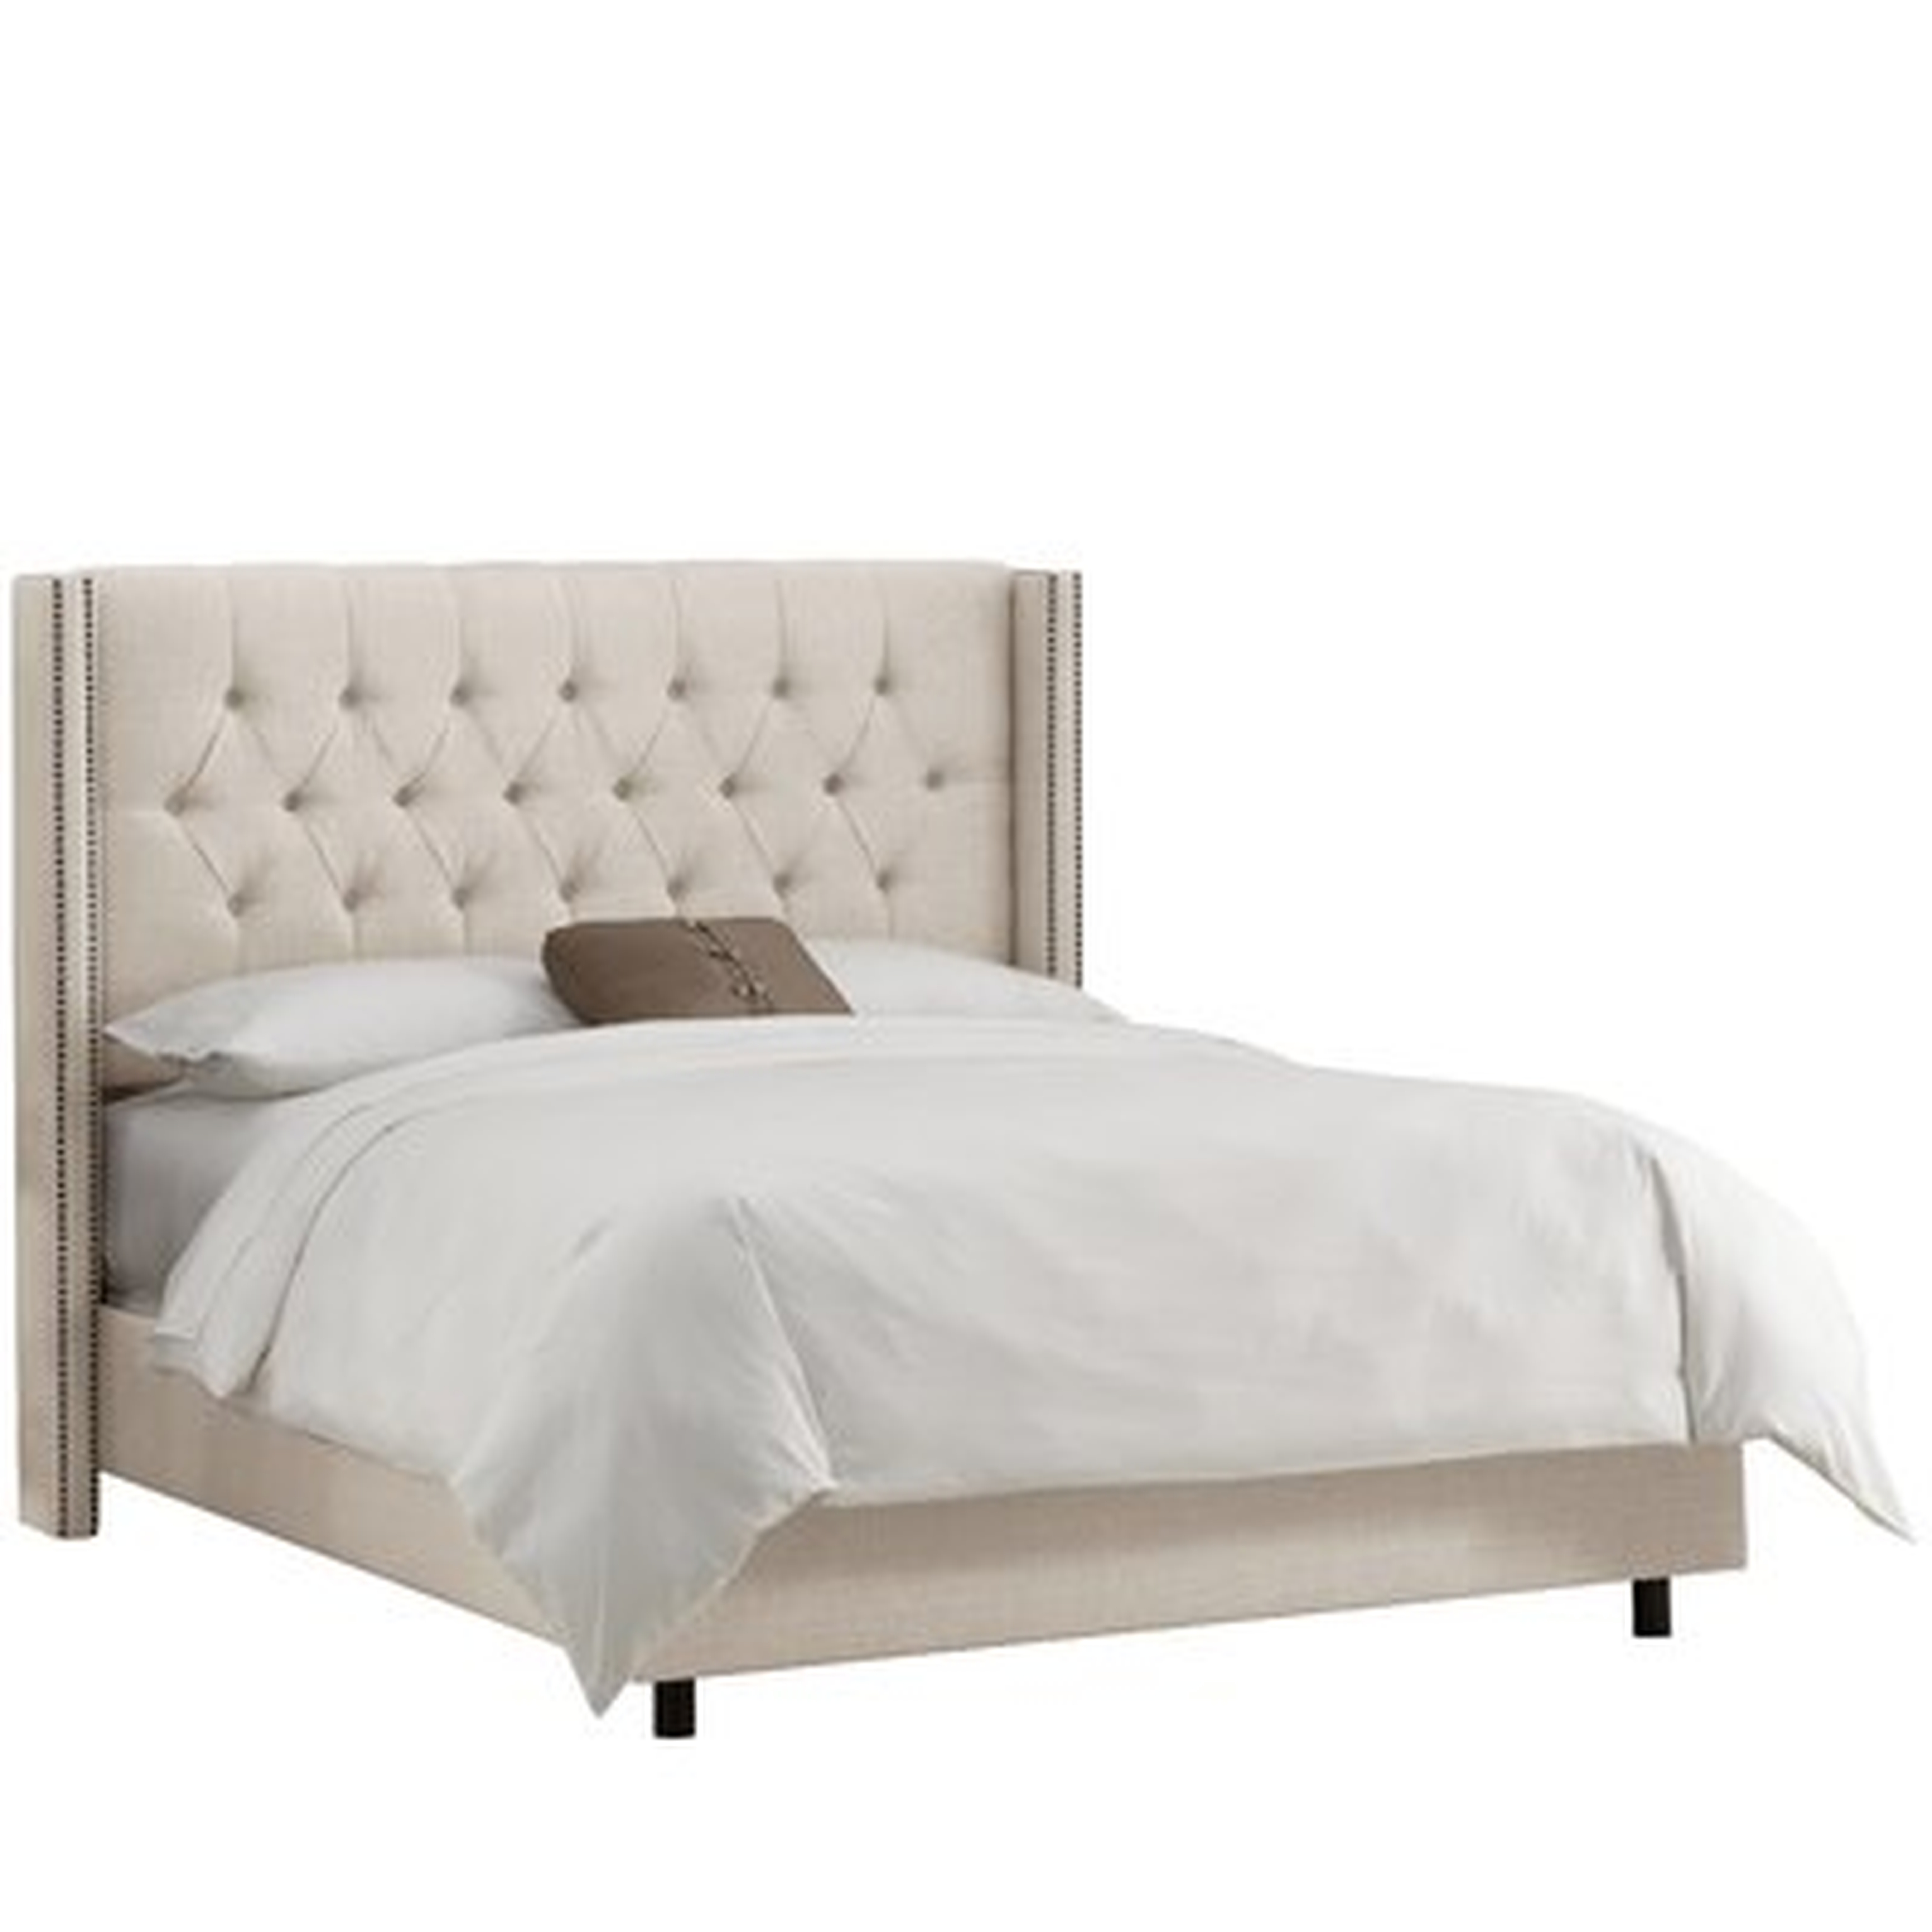 Kalvin Upholstered Standard Bed King - Wayfair